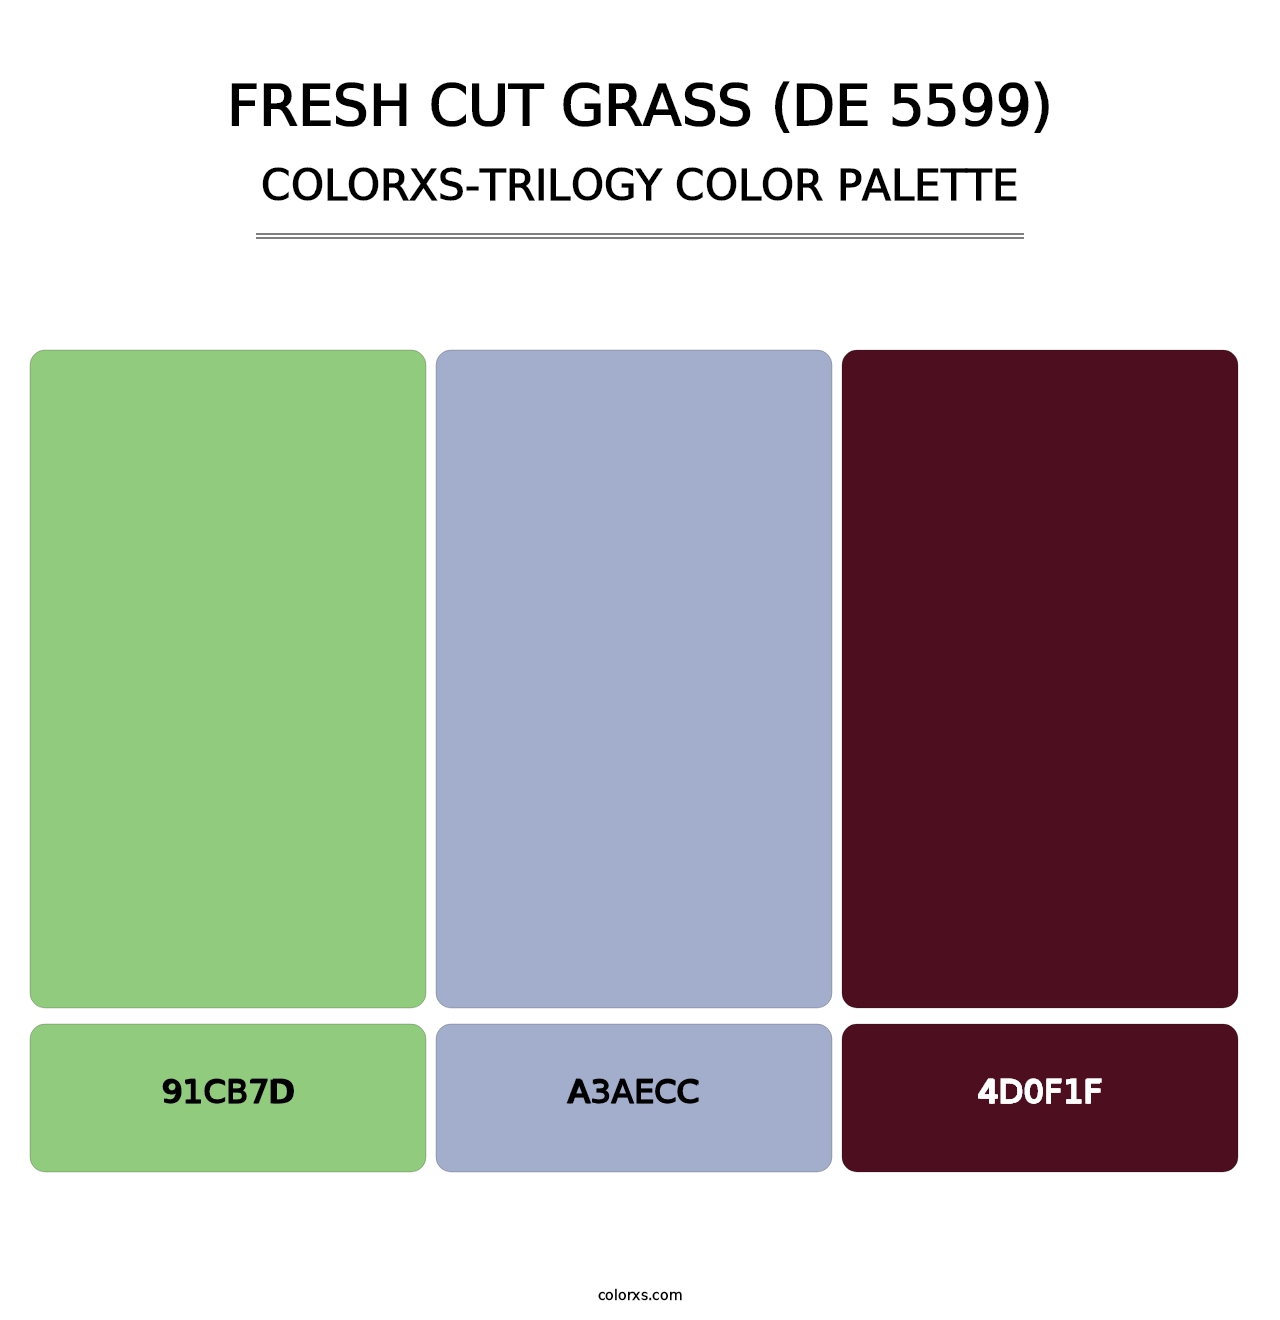 Fresh Cut Grass (DE 5599) - Colorxs Trilogy Palette